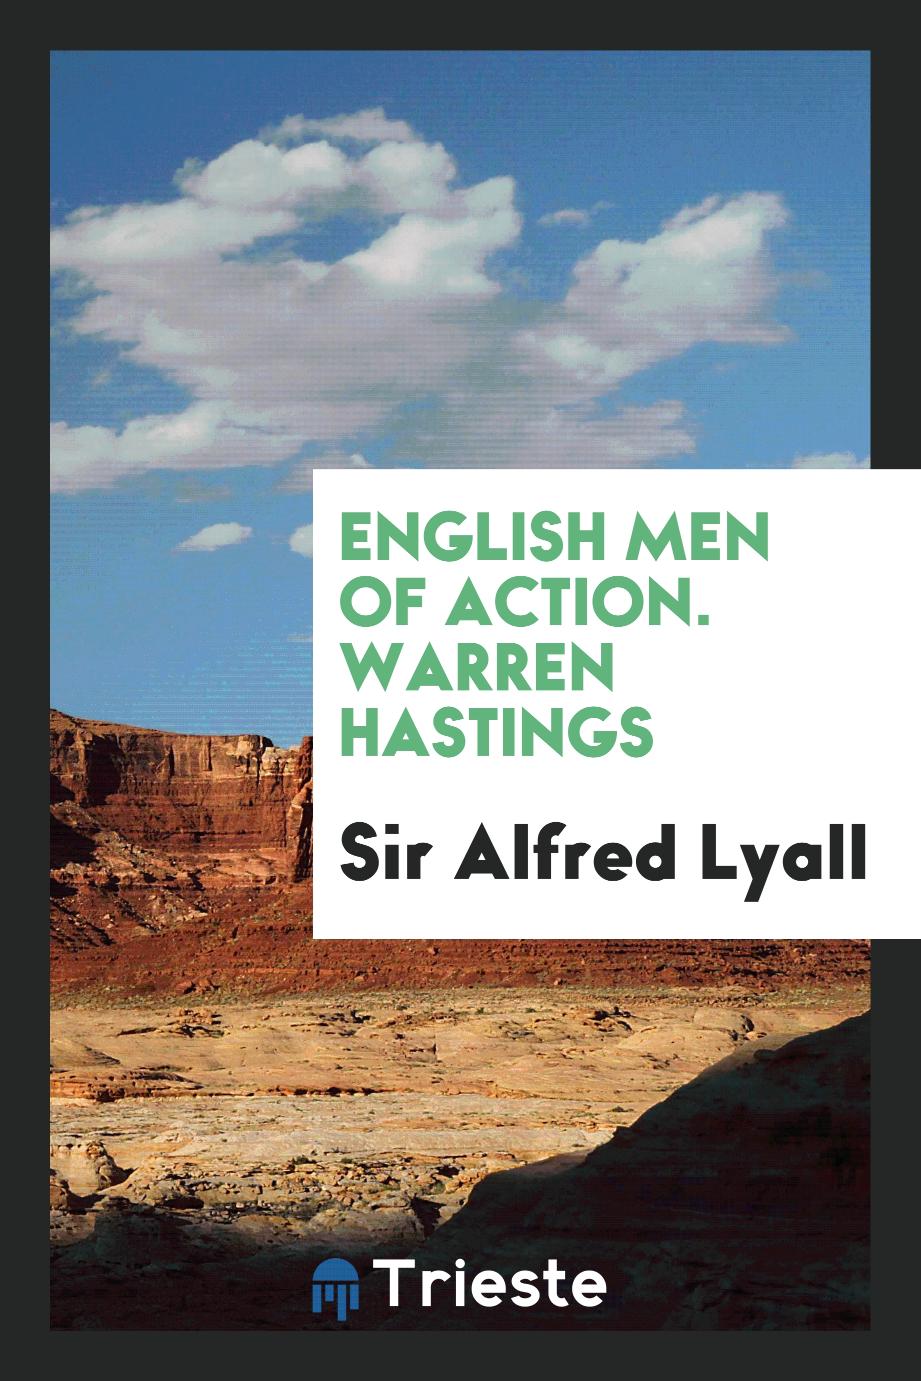 English Men of Action. Warren Hastings